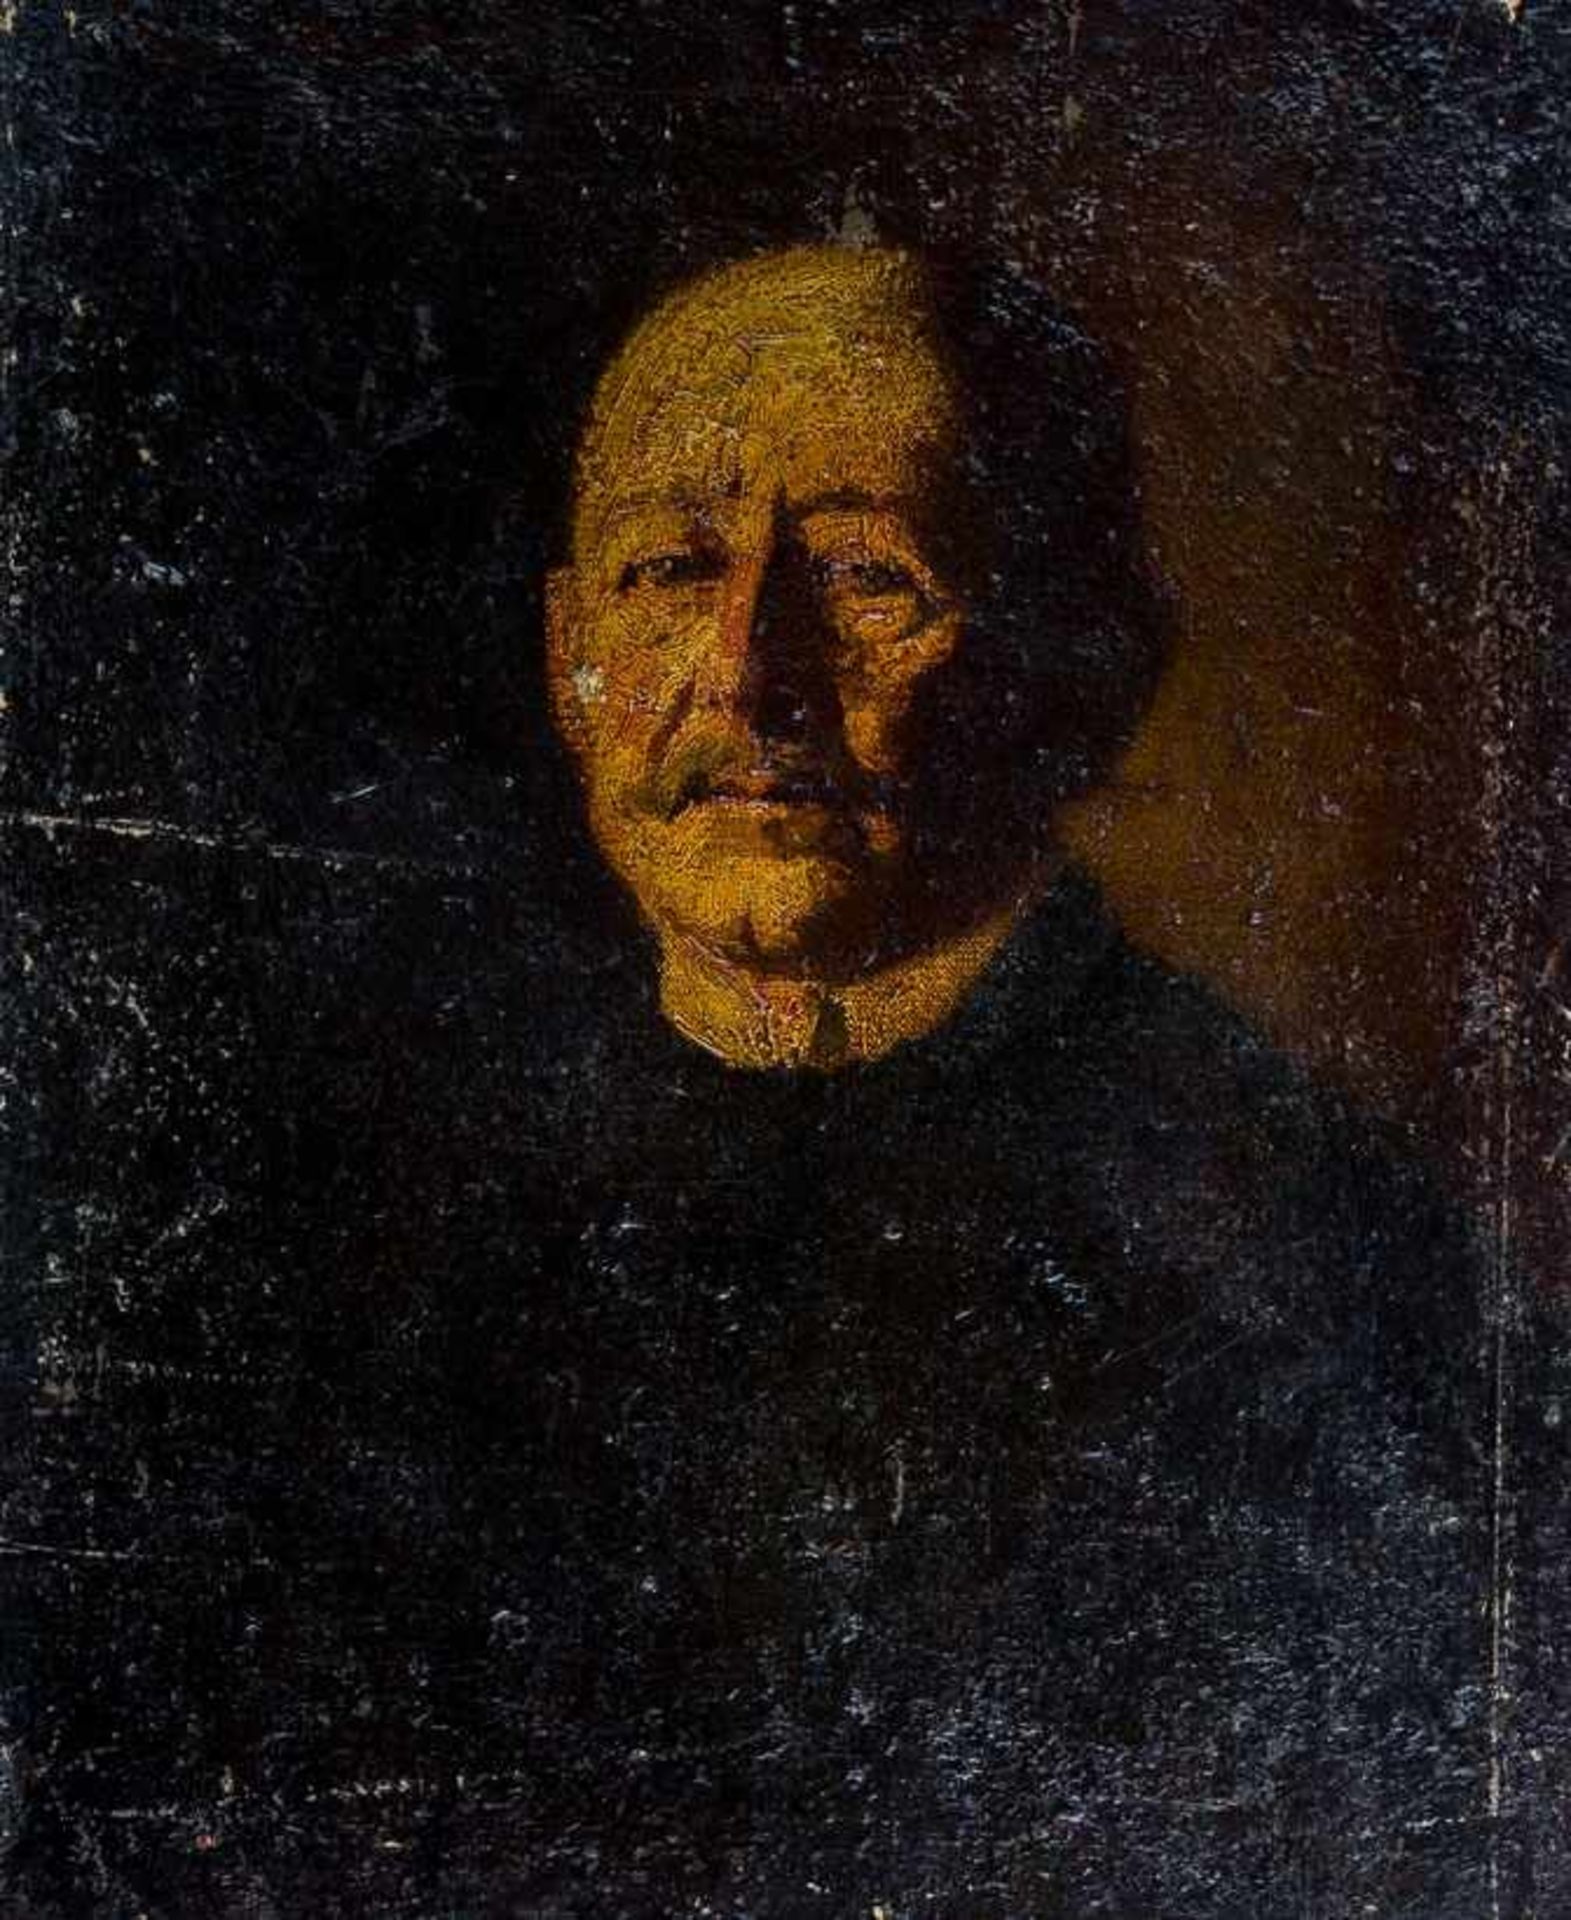 Agthe, Curt (Berlin 1862-1943) Männerporträt.Lwd. 67×54 cm. Rückseitig betitelt: Porträtstudie,